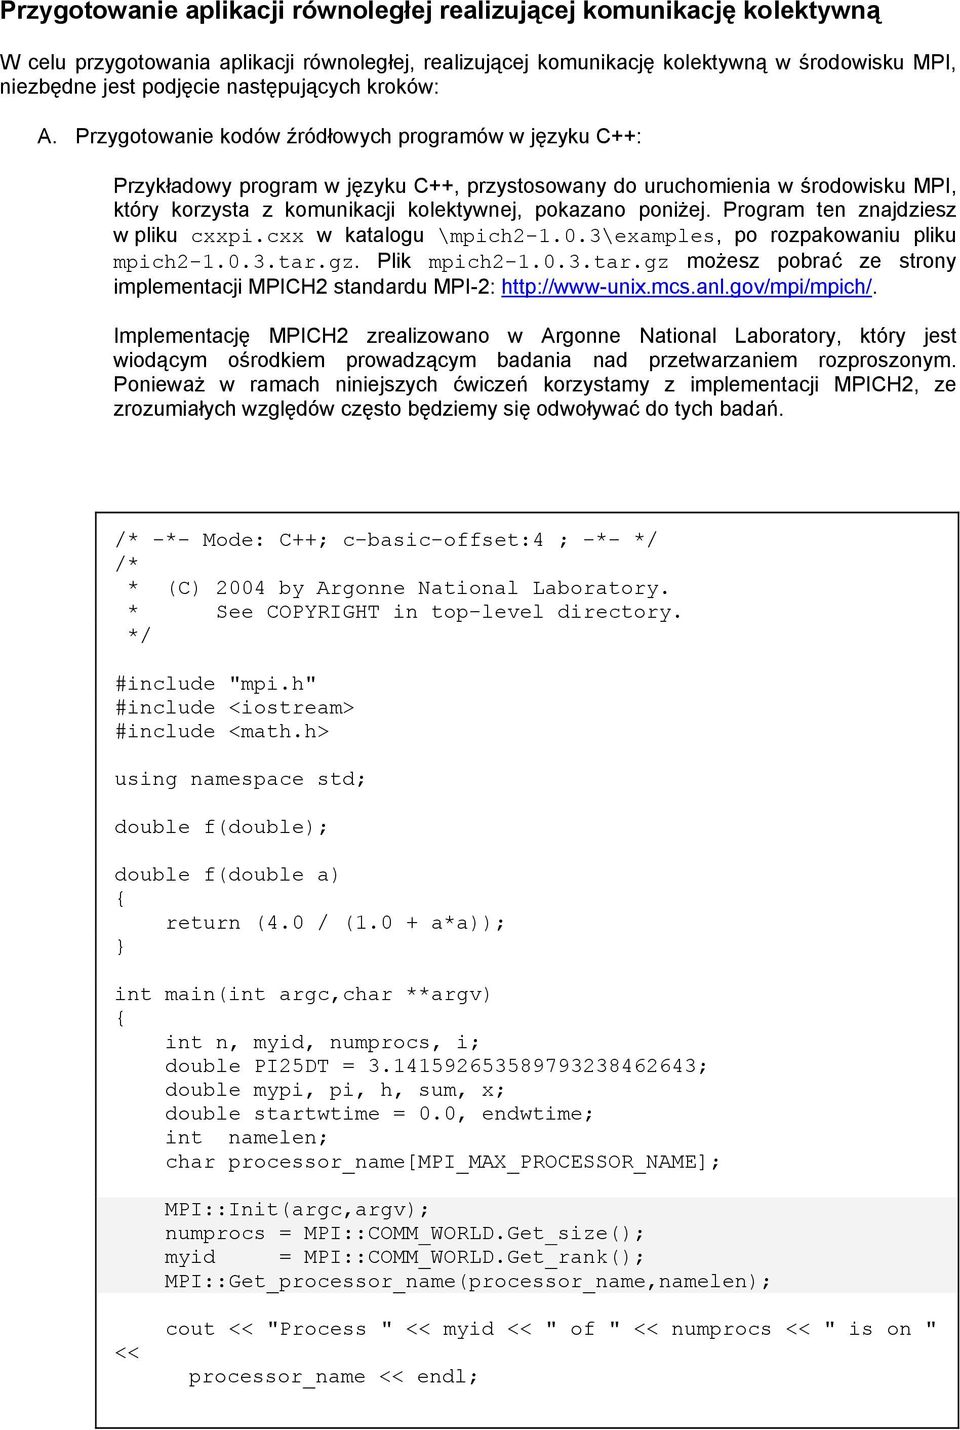 Przygotowanie kodów źródłowych programów w języku C++: Przykładowy program w języku C++, przystosowany do uruchomienia w środowisku MPI, który korzysta z komunikacji kolektywnej, pokazano poniżej.